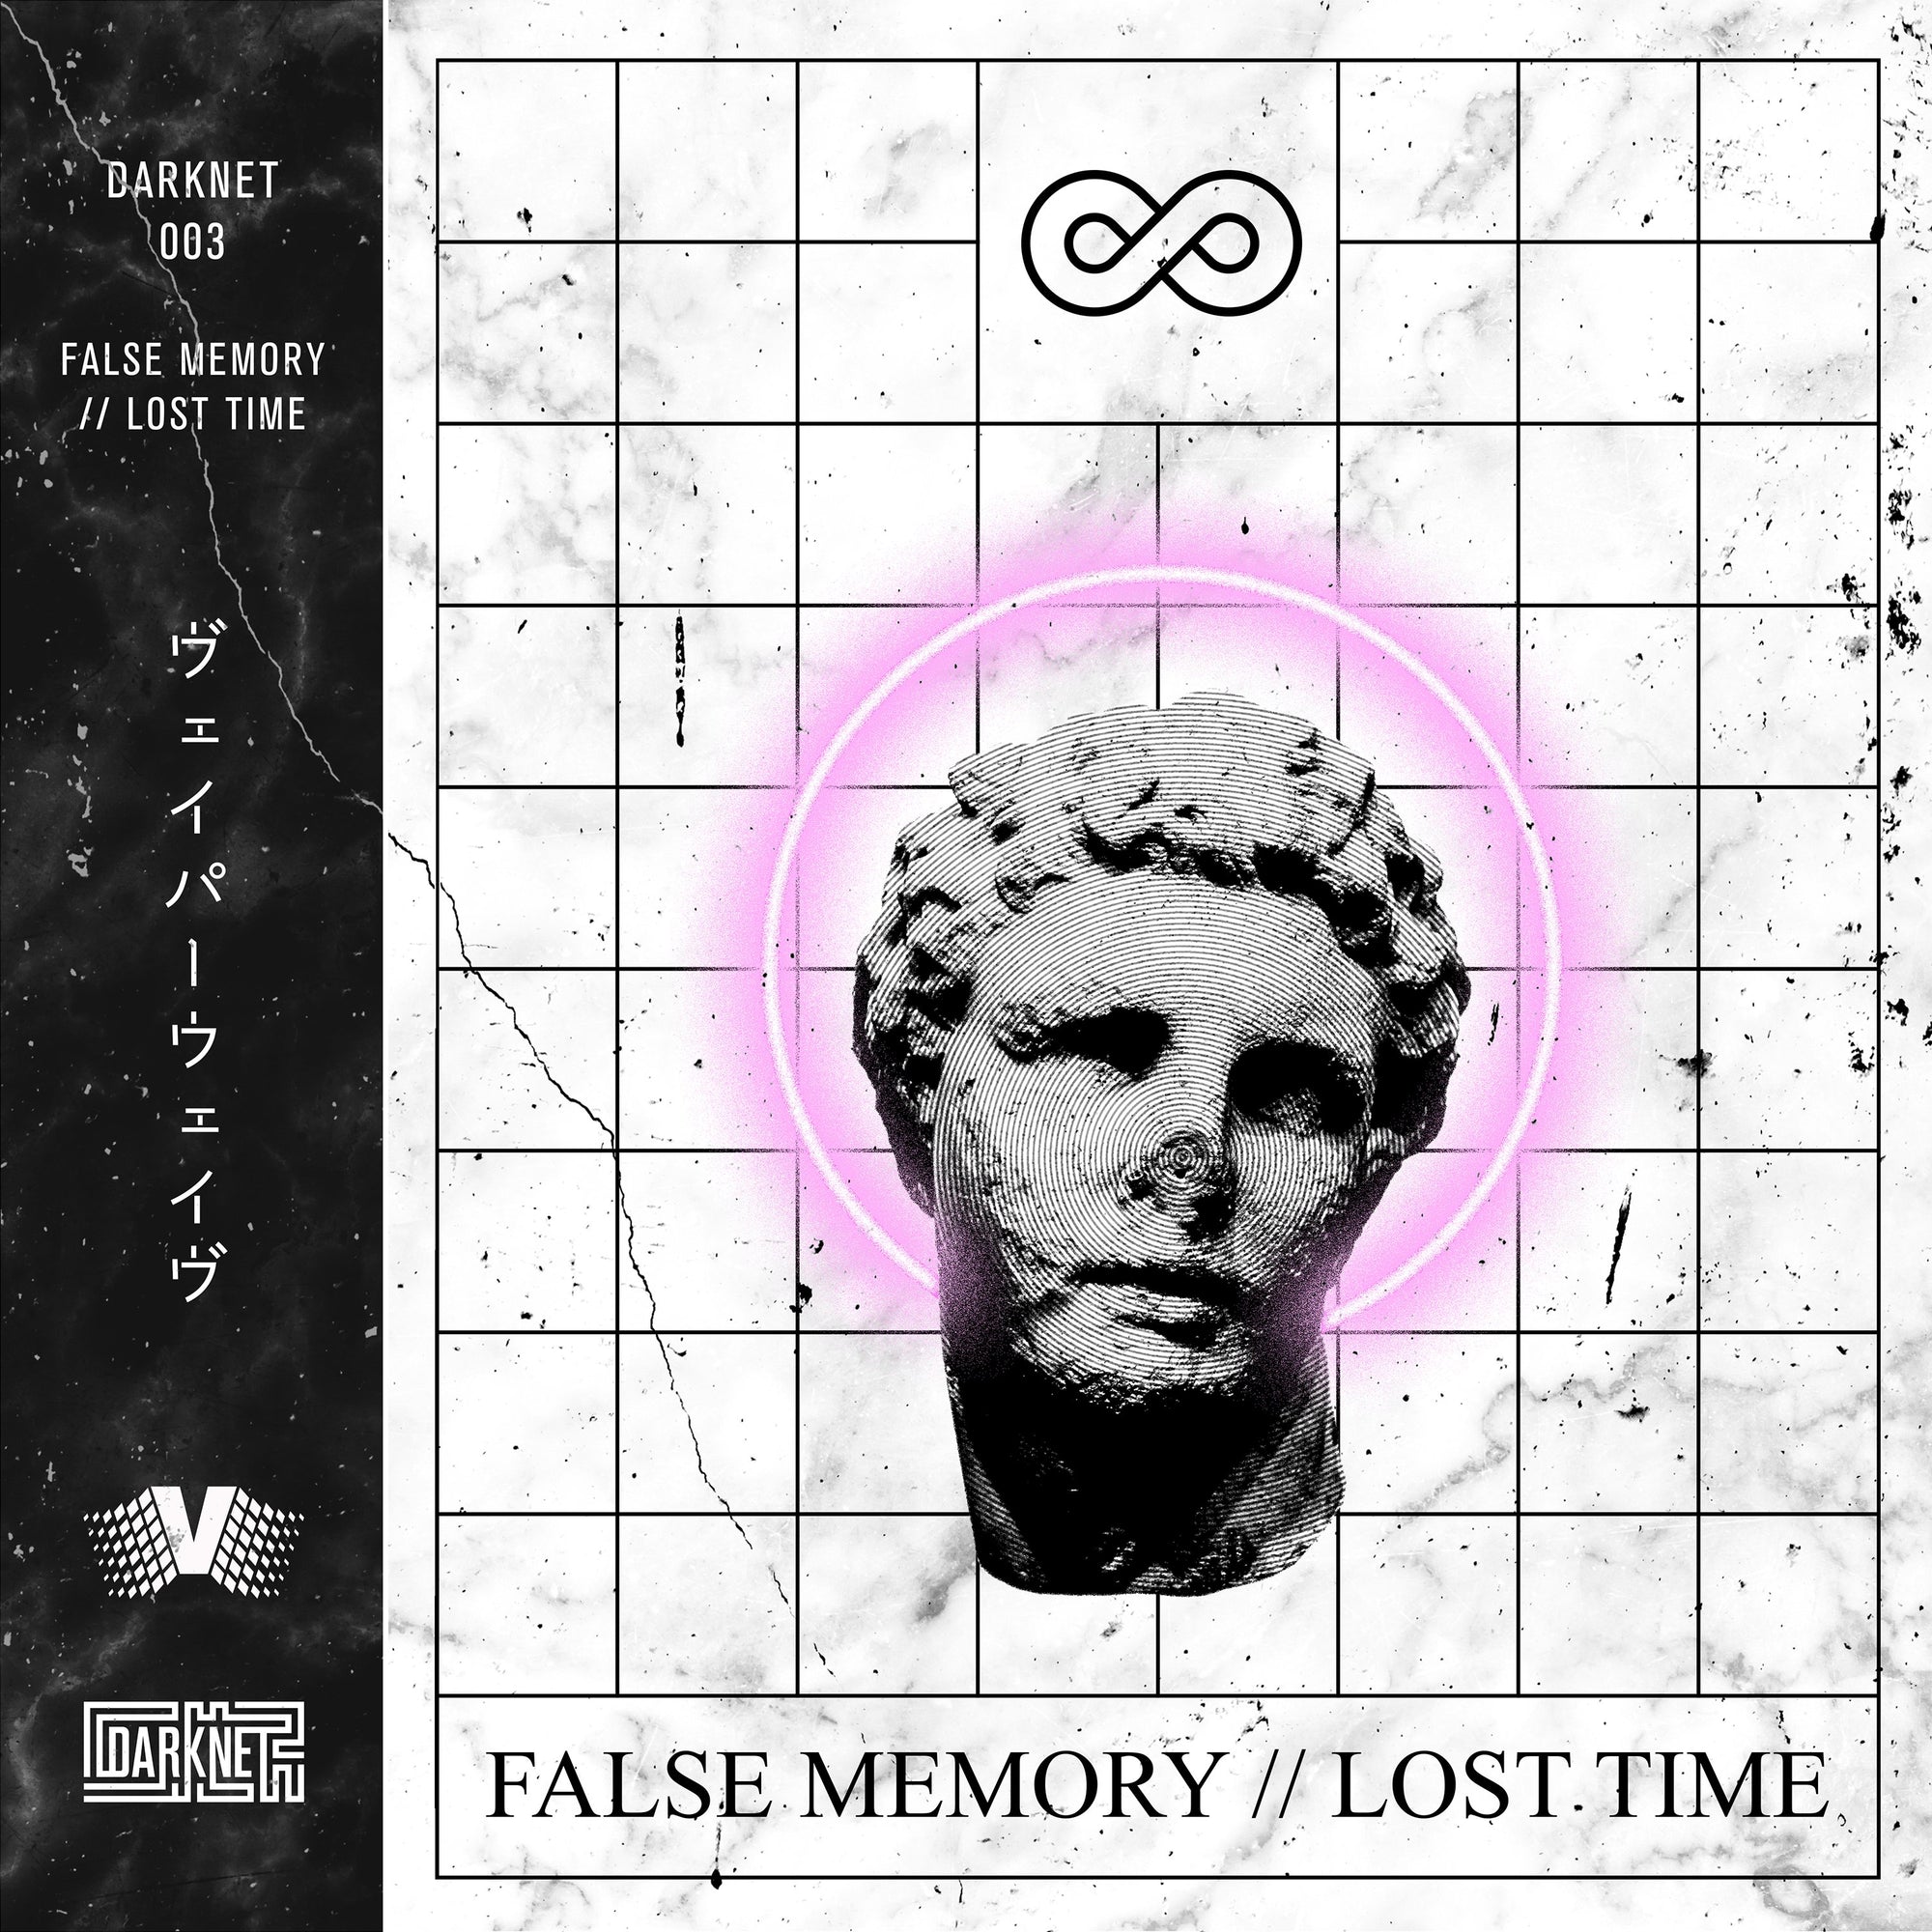 FALSE MEMORY // LOST TIME